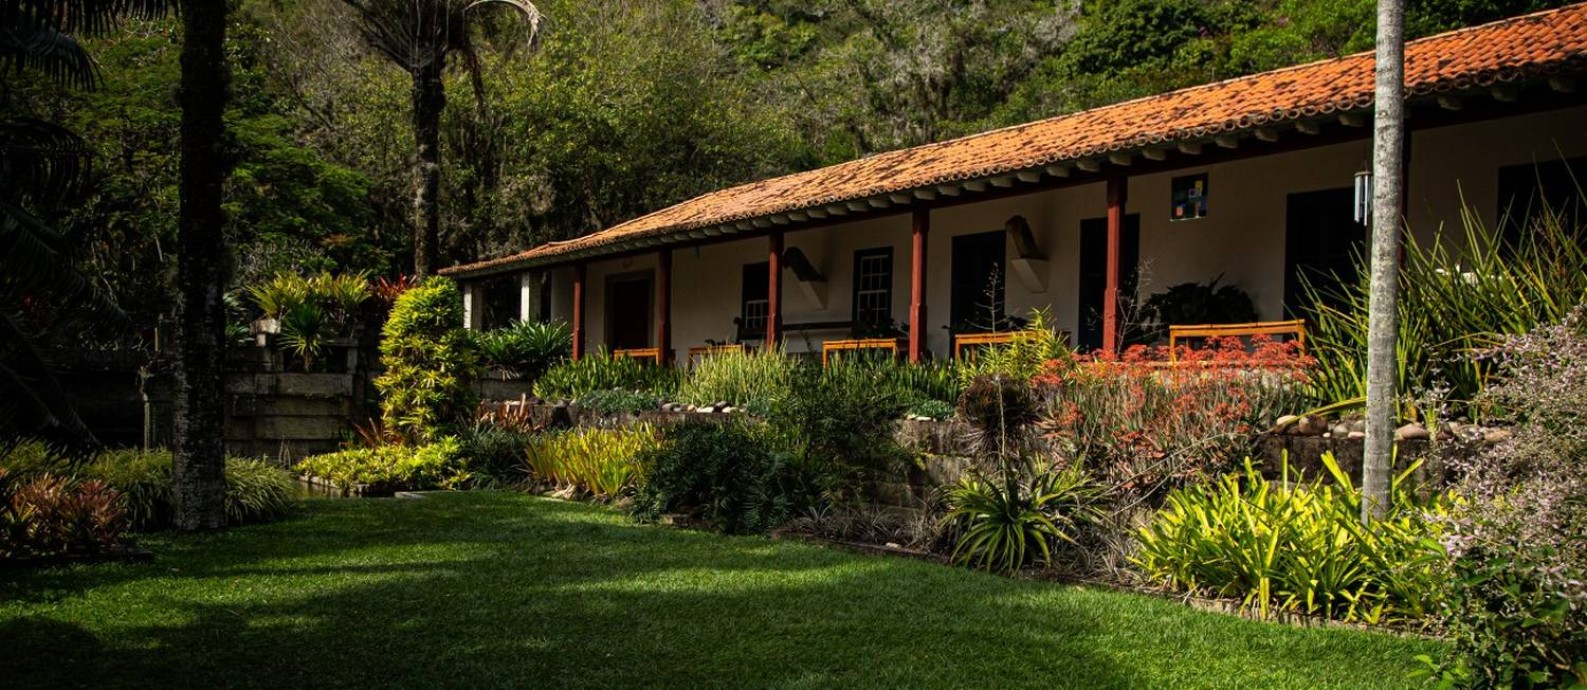 Casa onde o paisagista Roberto Burle Marx morou no sítio faz parte do patrimônio reconhecido Foto: Hermes de Paula / Agência O Globo